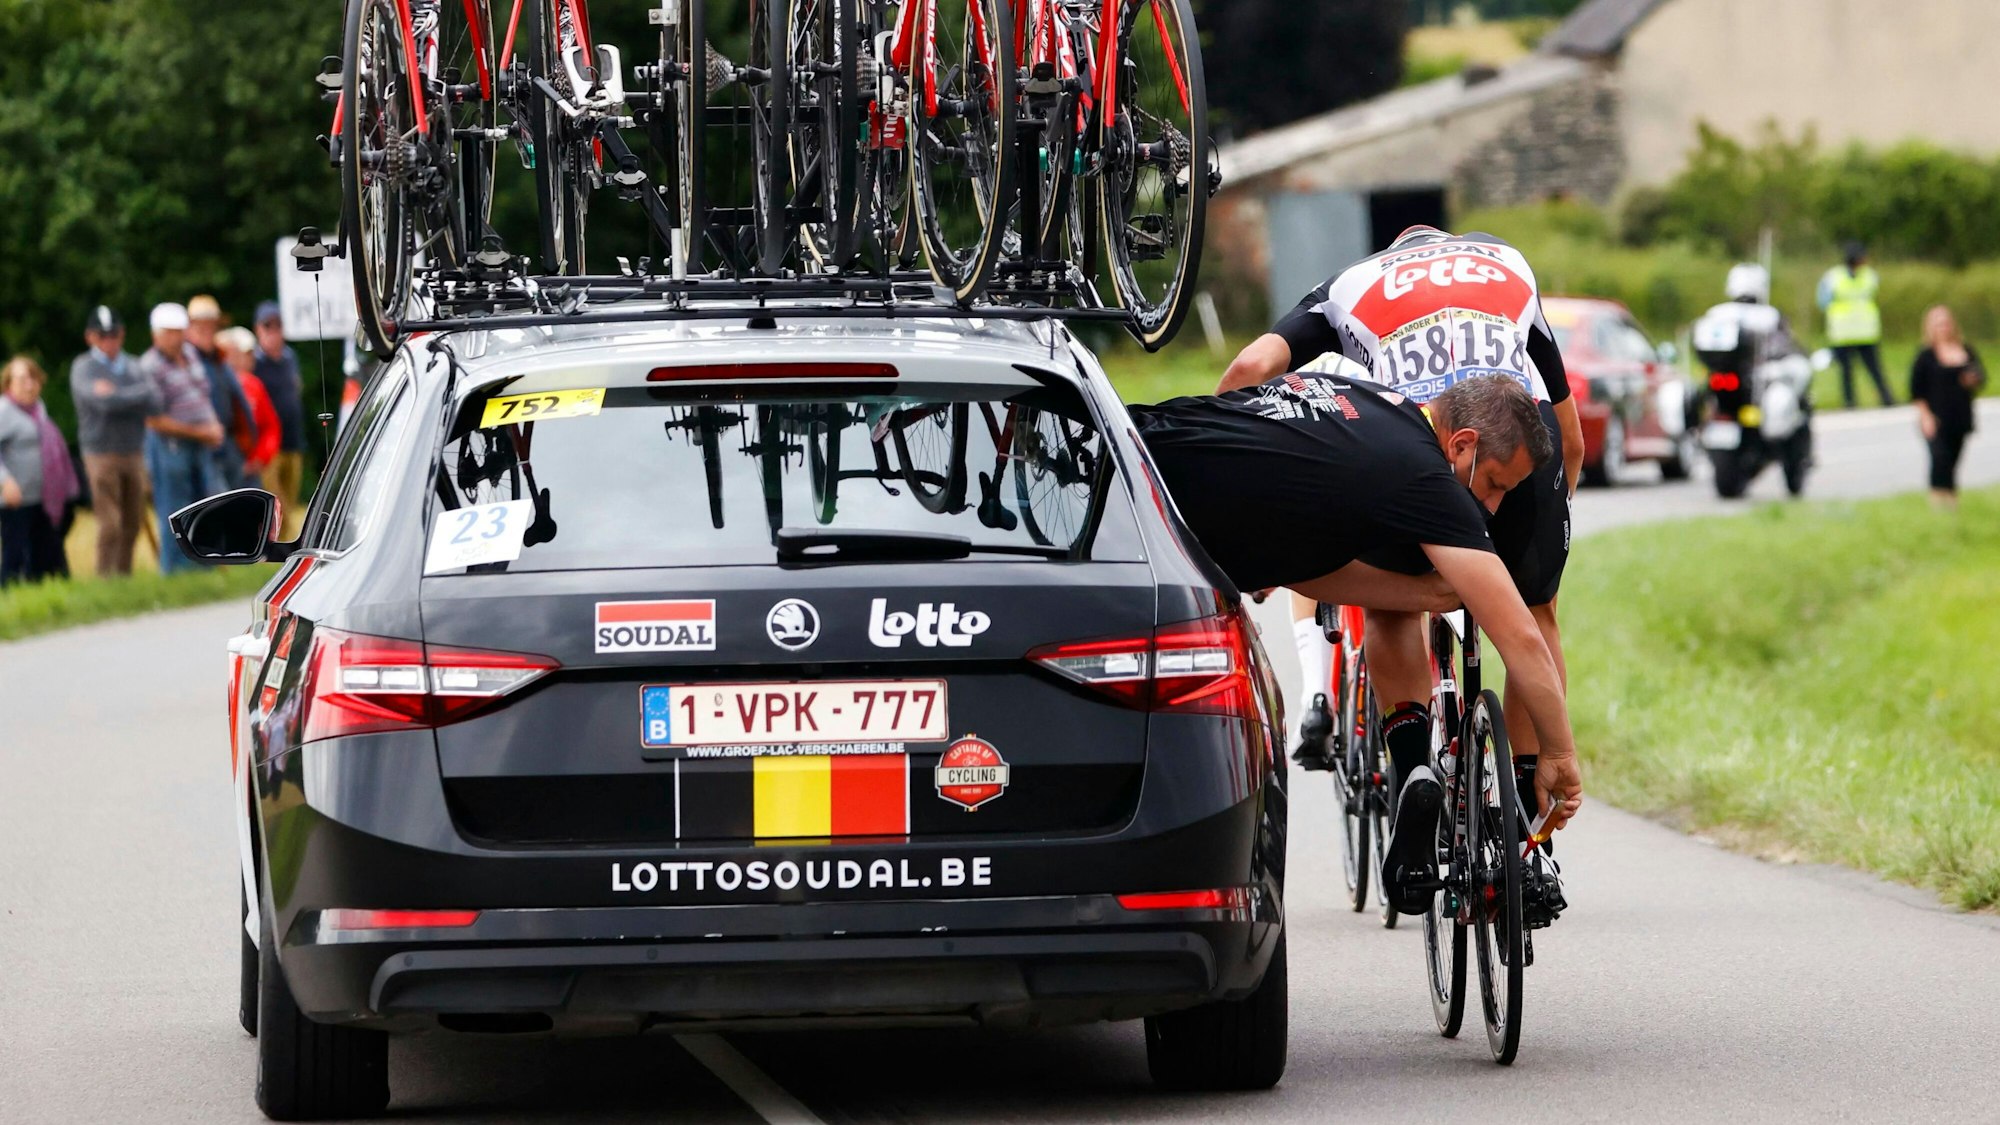 Das Rennrad von Brent Van Moer wird bei der Tour de France aus dem Auto heraus repariert, während der Belgier auf dem Rad sitzt.